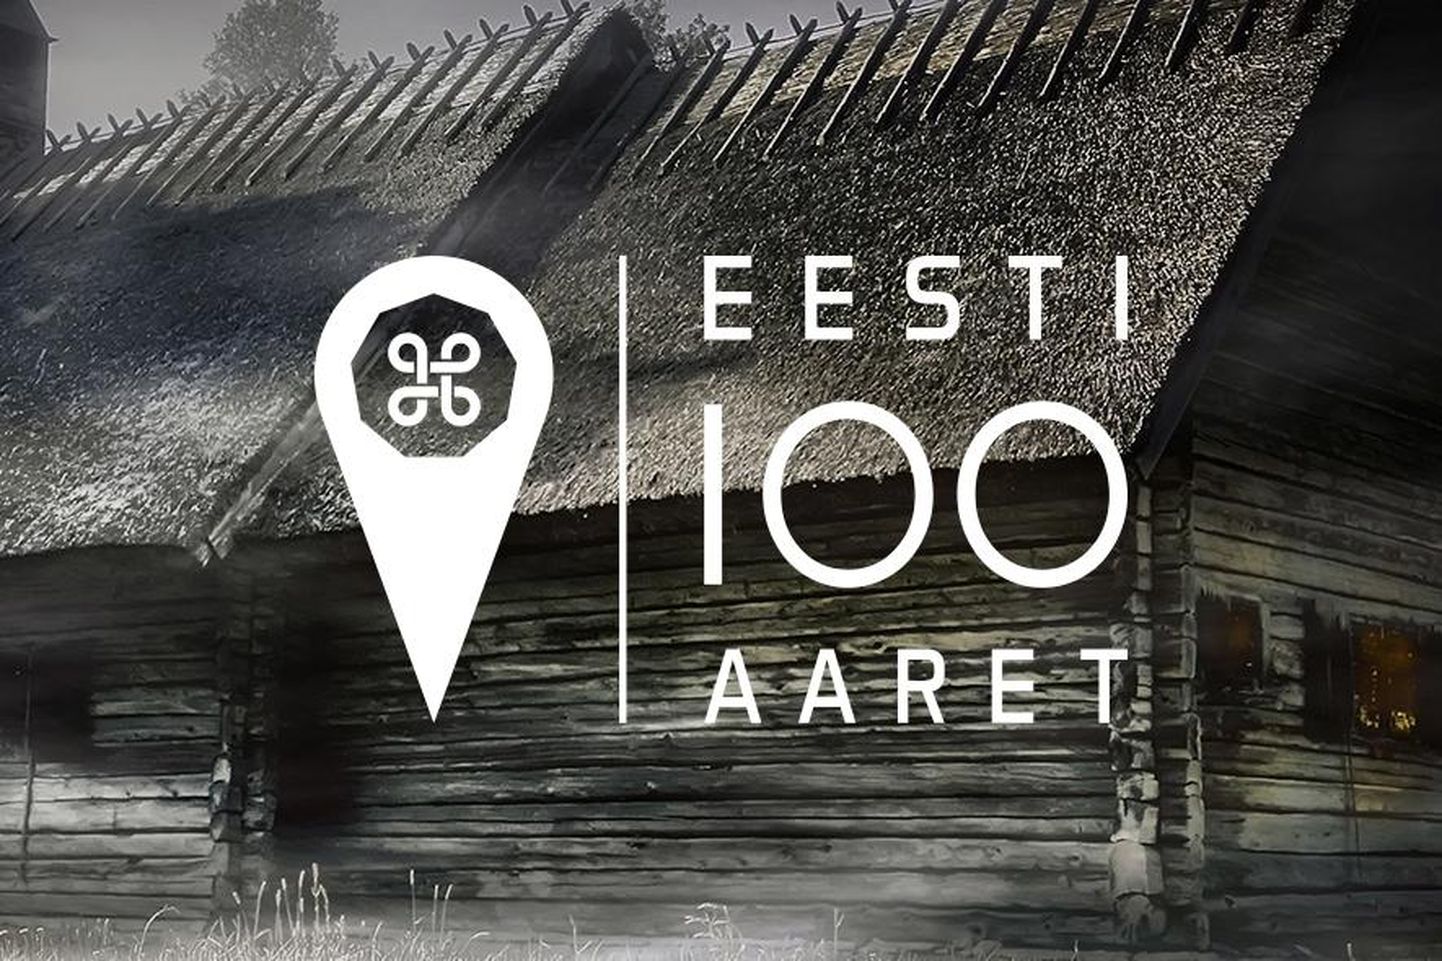 ”Eesti 100 aaret”